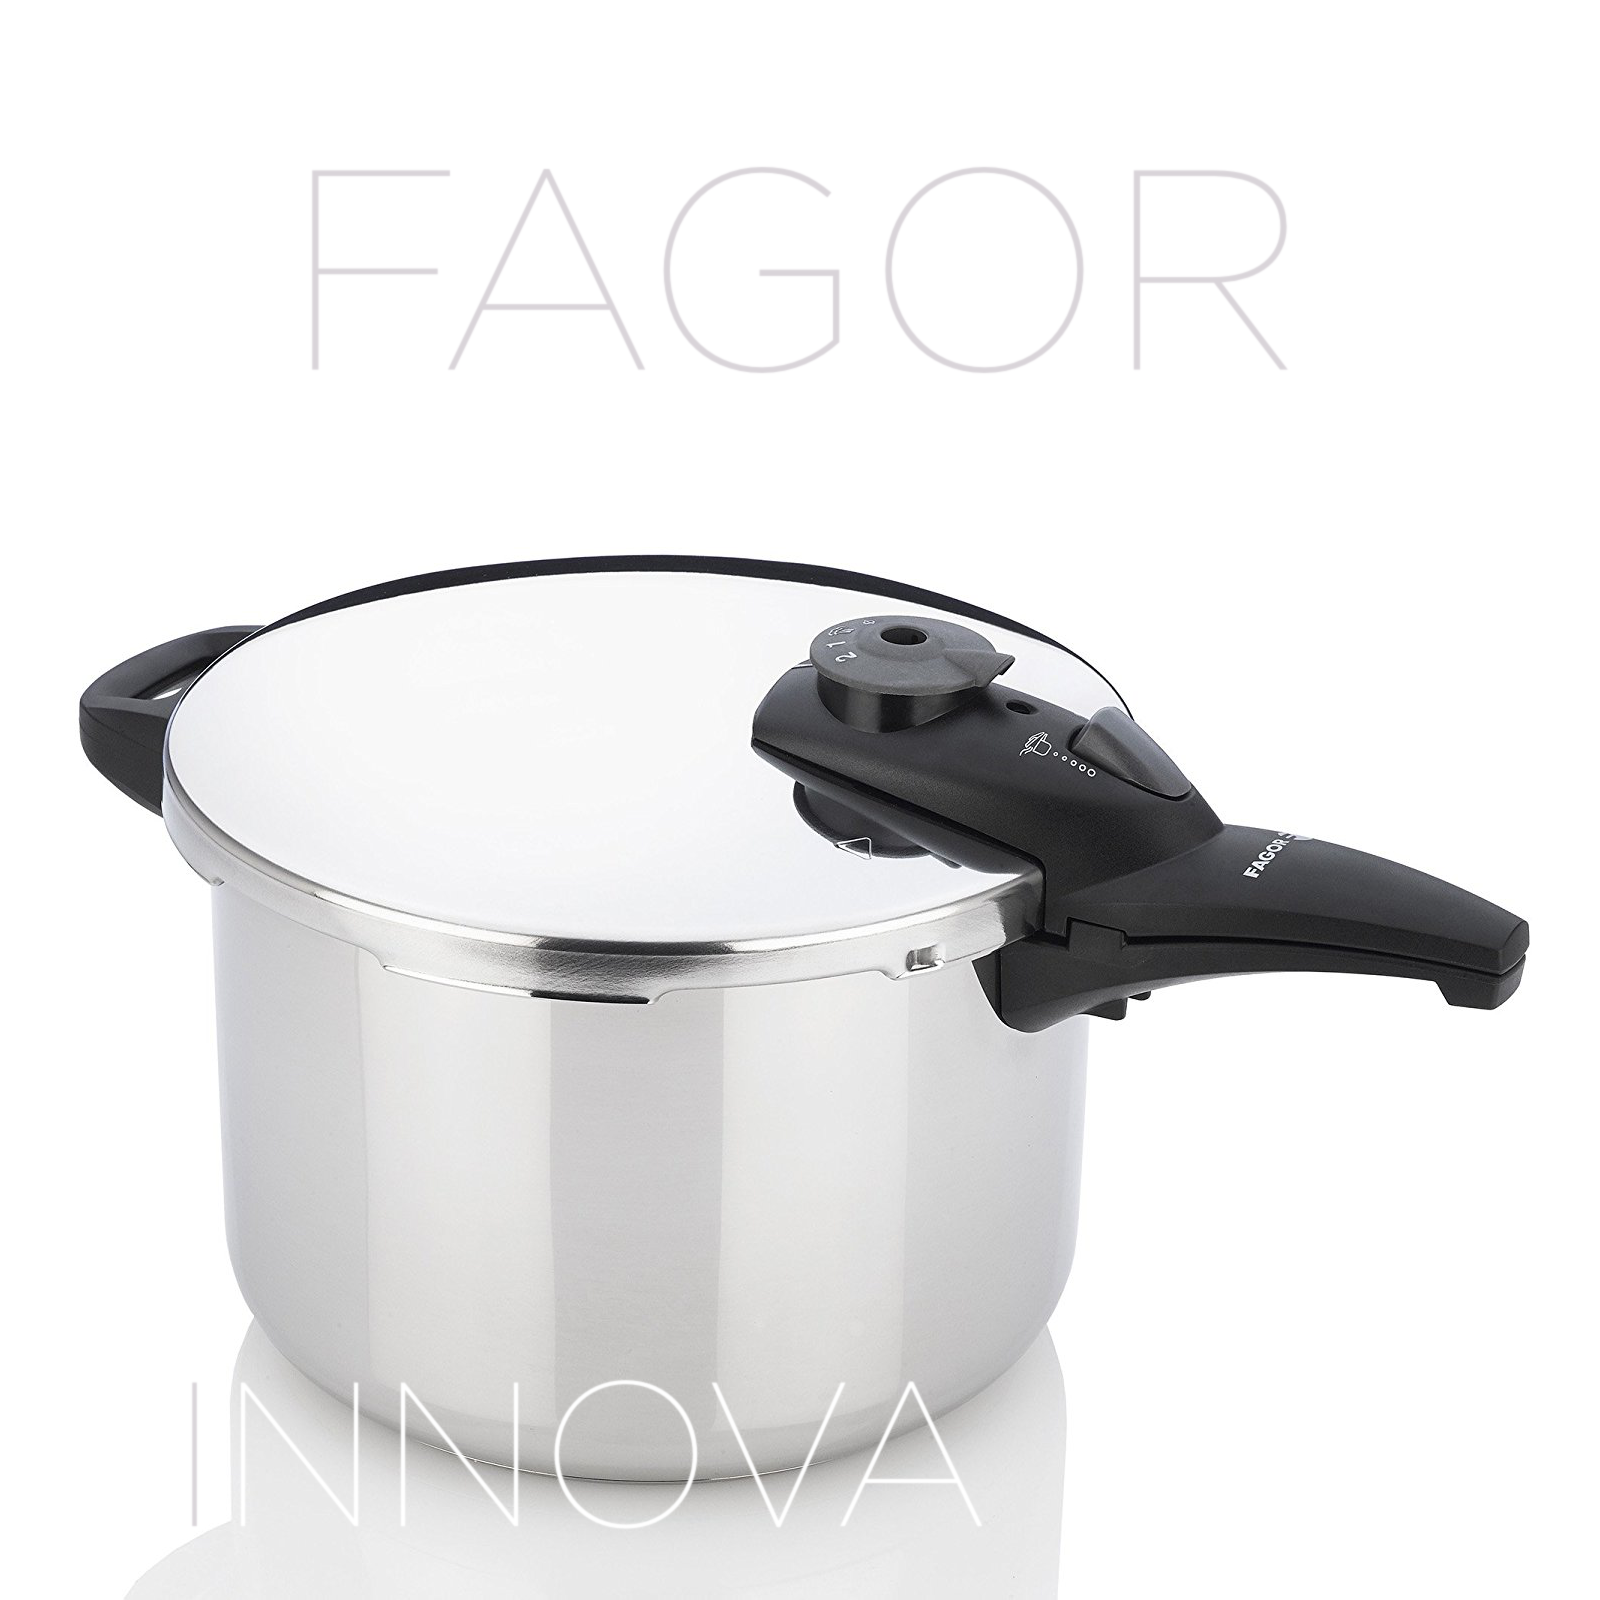 Fagor Duo 10-quart Pressure Cooker with Bonus 'Pressure Cooker